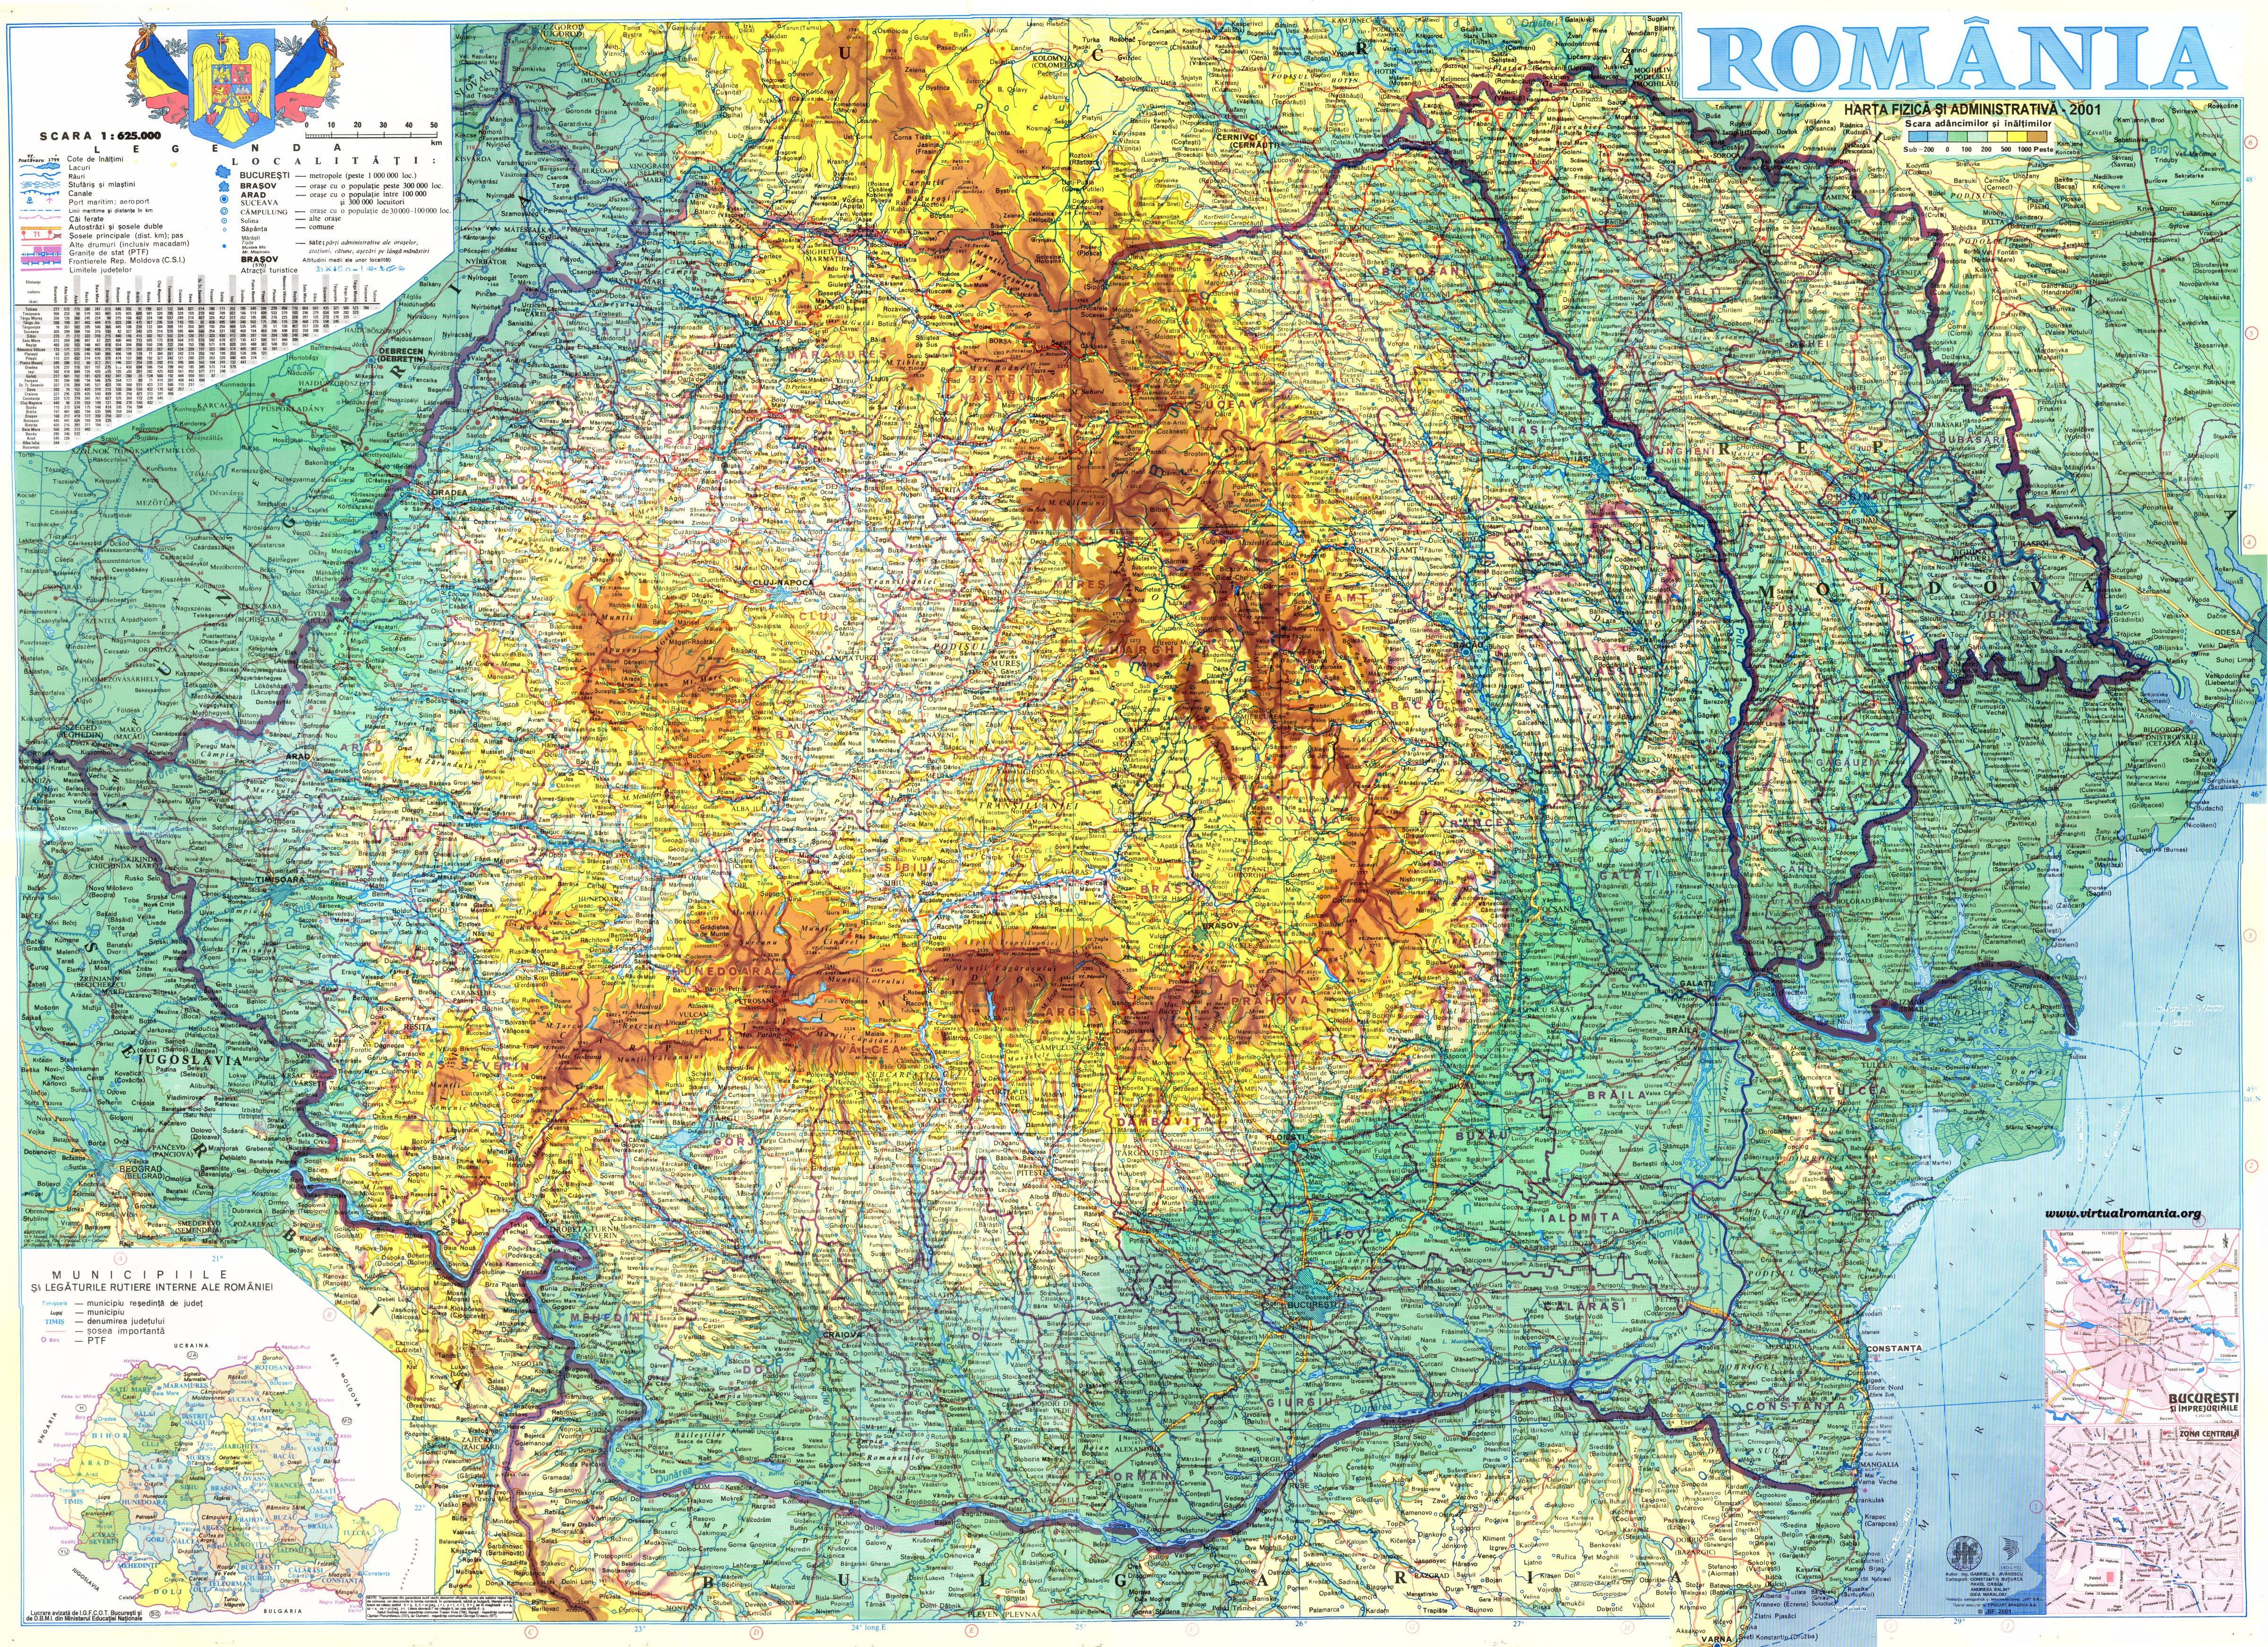 online erdély térkép Románia autótérképek   online egyszerűen kezelhető interaktív  online erdély térkép